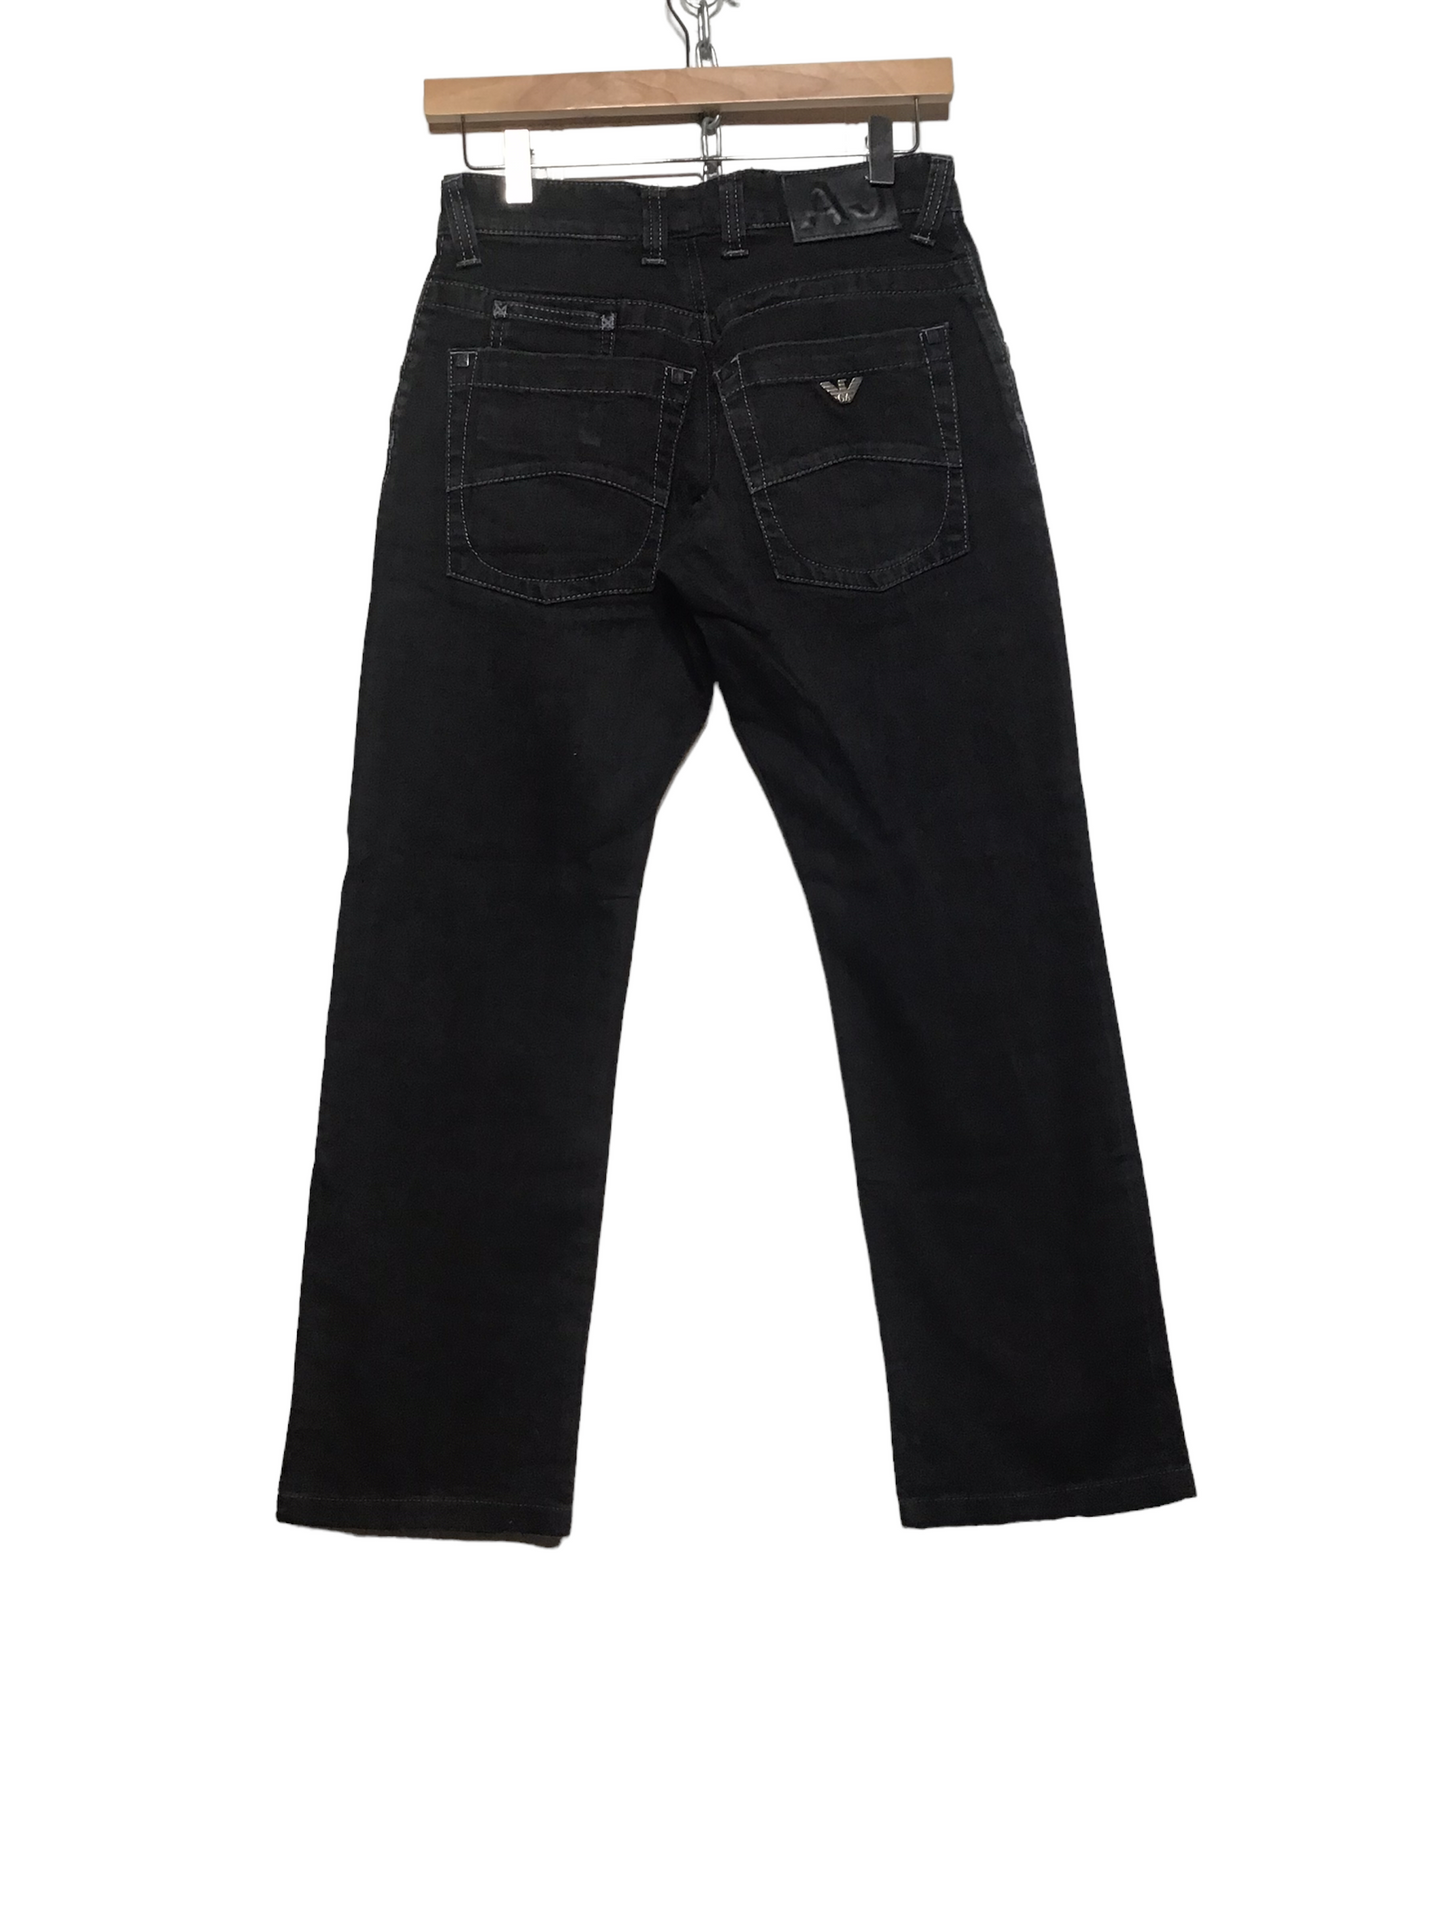 Armani Black Jeans (28X27)